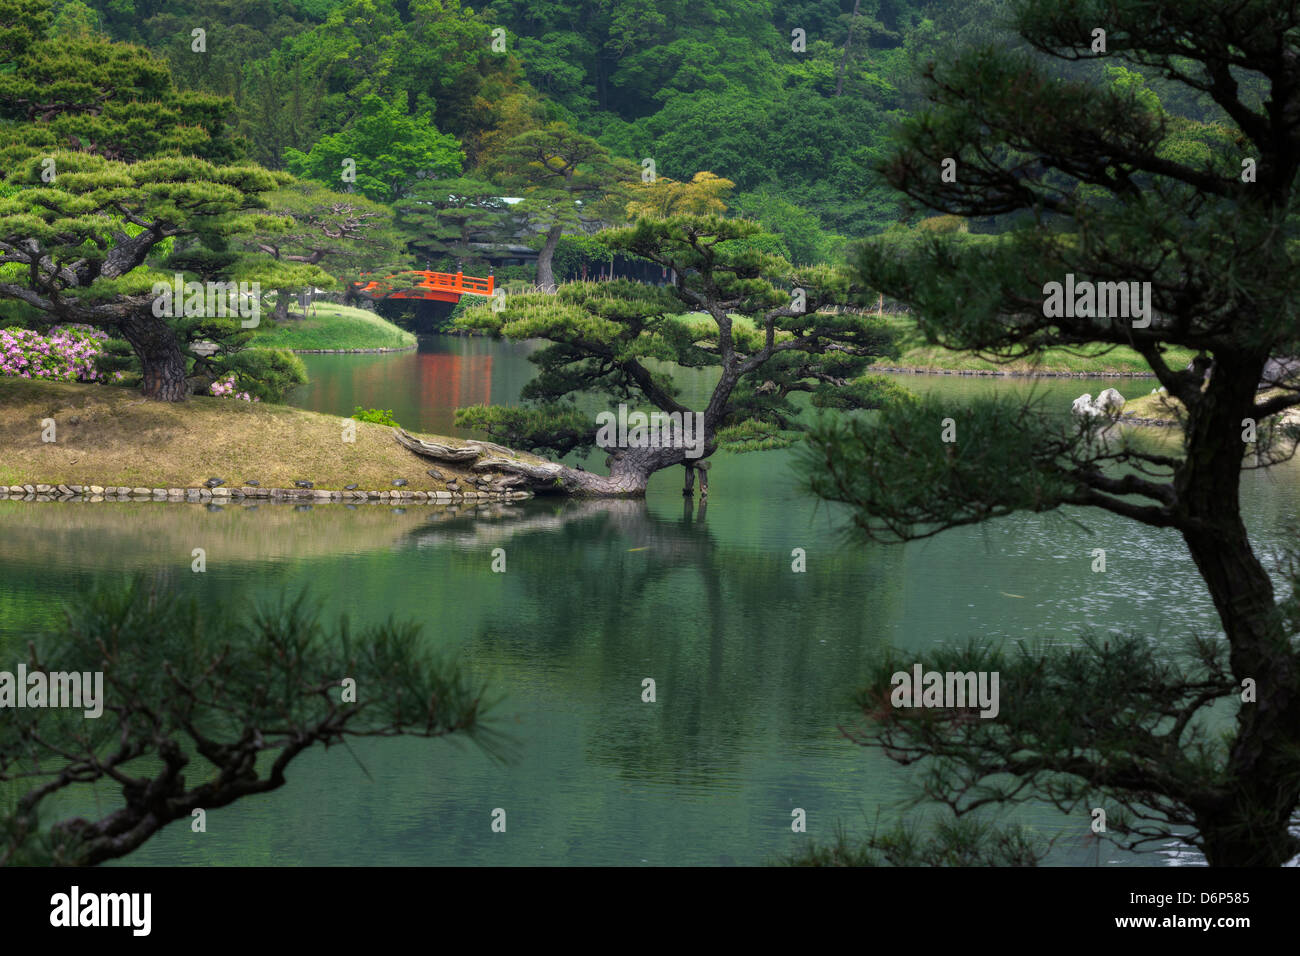 Japanischer Garten mit einem Teich, rote Brücke, ornamentale Pinien und Schildkröten auf der Bank. Stockfoto